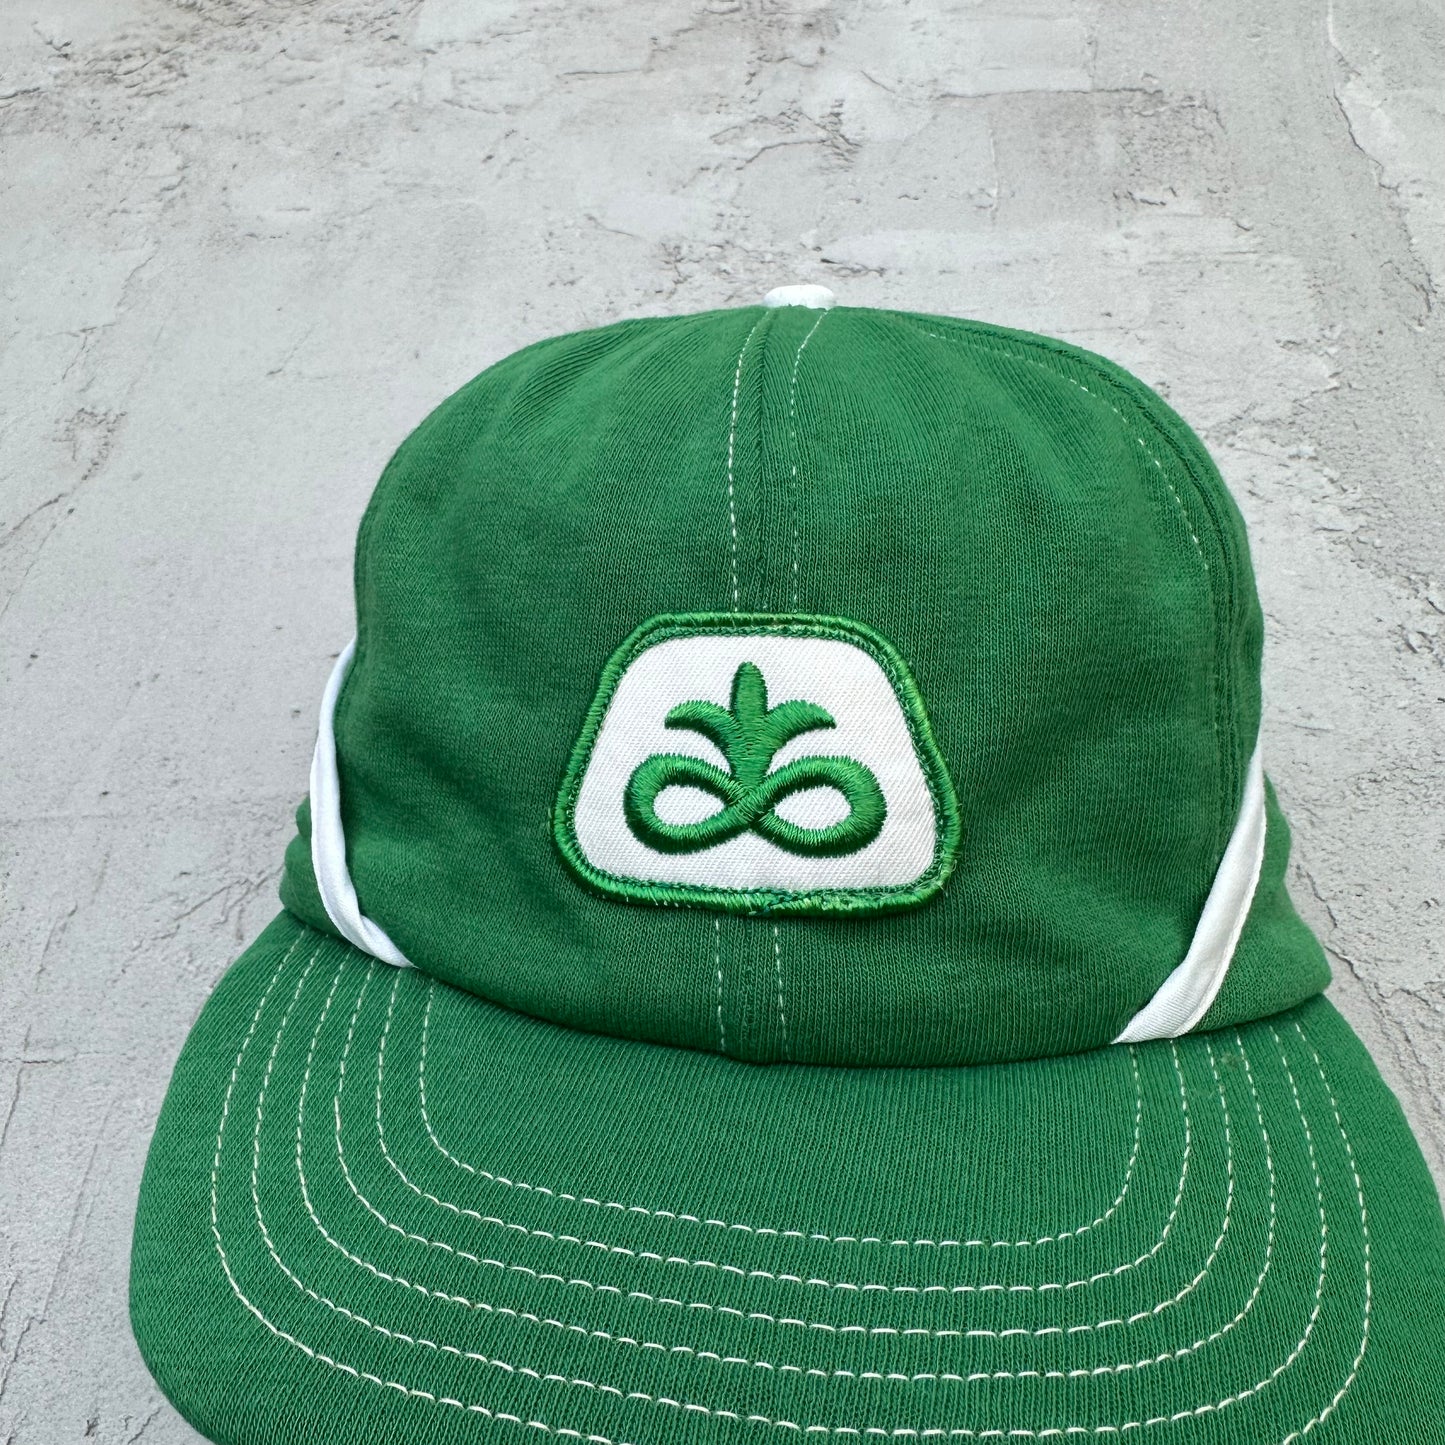 Vintage Pioneer Seed Corn Green Farm Hat